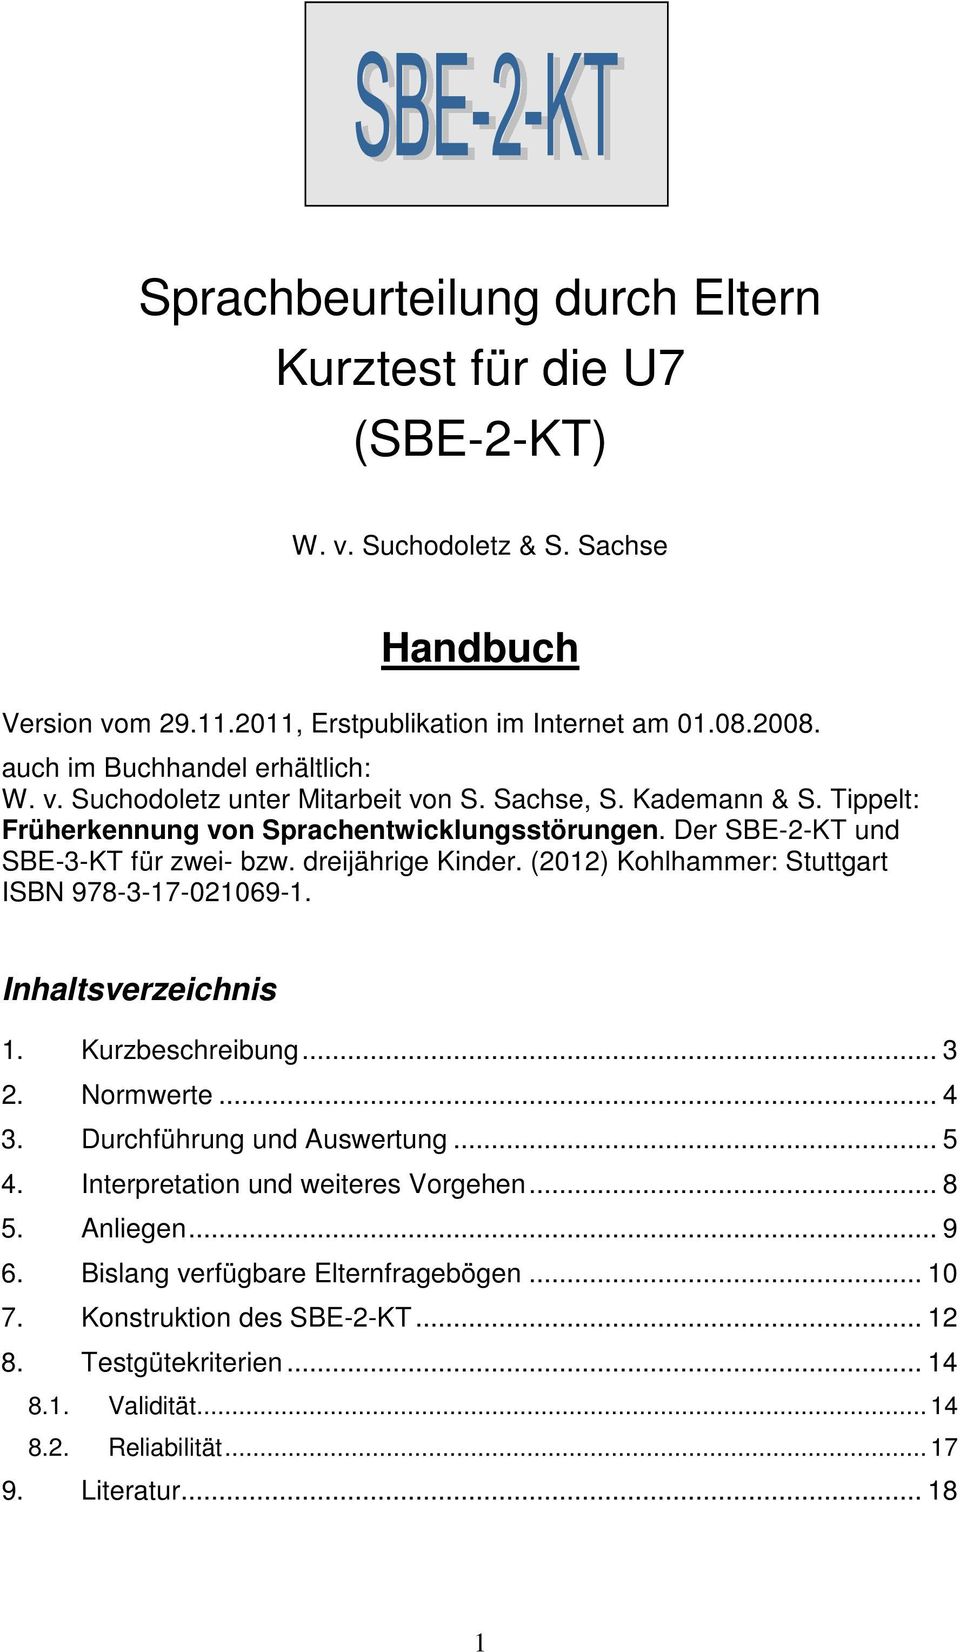 Der SBE-2-KT und SBE-3-KT für zwei- bzw. dreijährige Kinder. (2012) Kohlhammer: Stuttgart ISBN 978-3-17-021069-1. Inhaltsverzeichnis 1. Kurzbeschreibung... 3 2. Normwerte... 4 3.